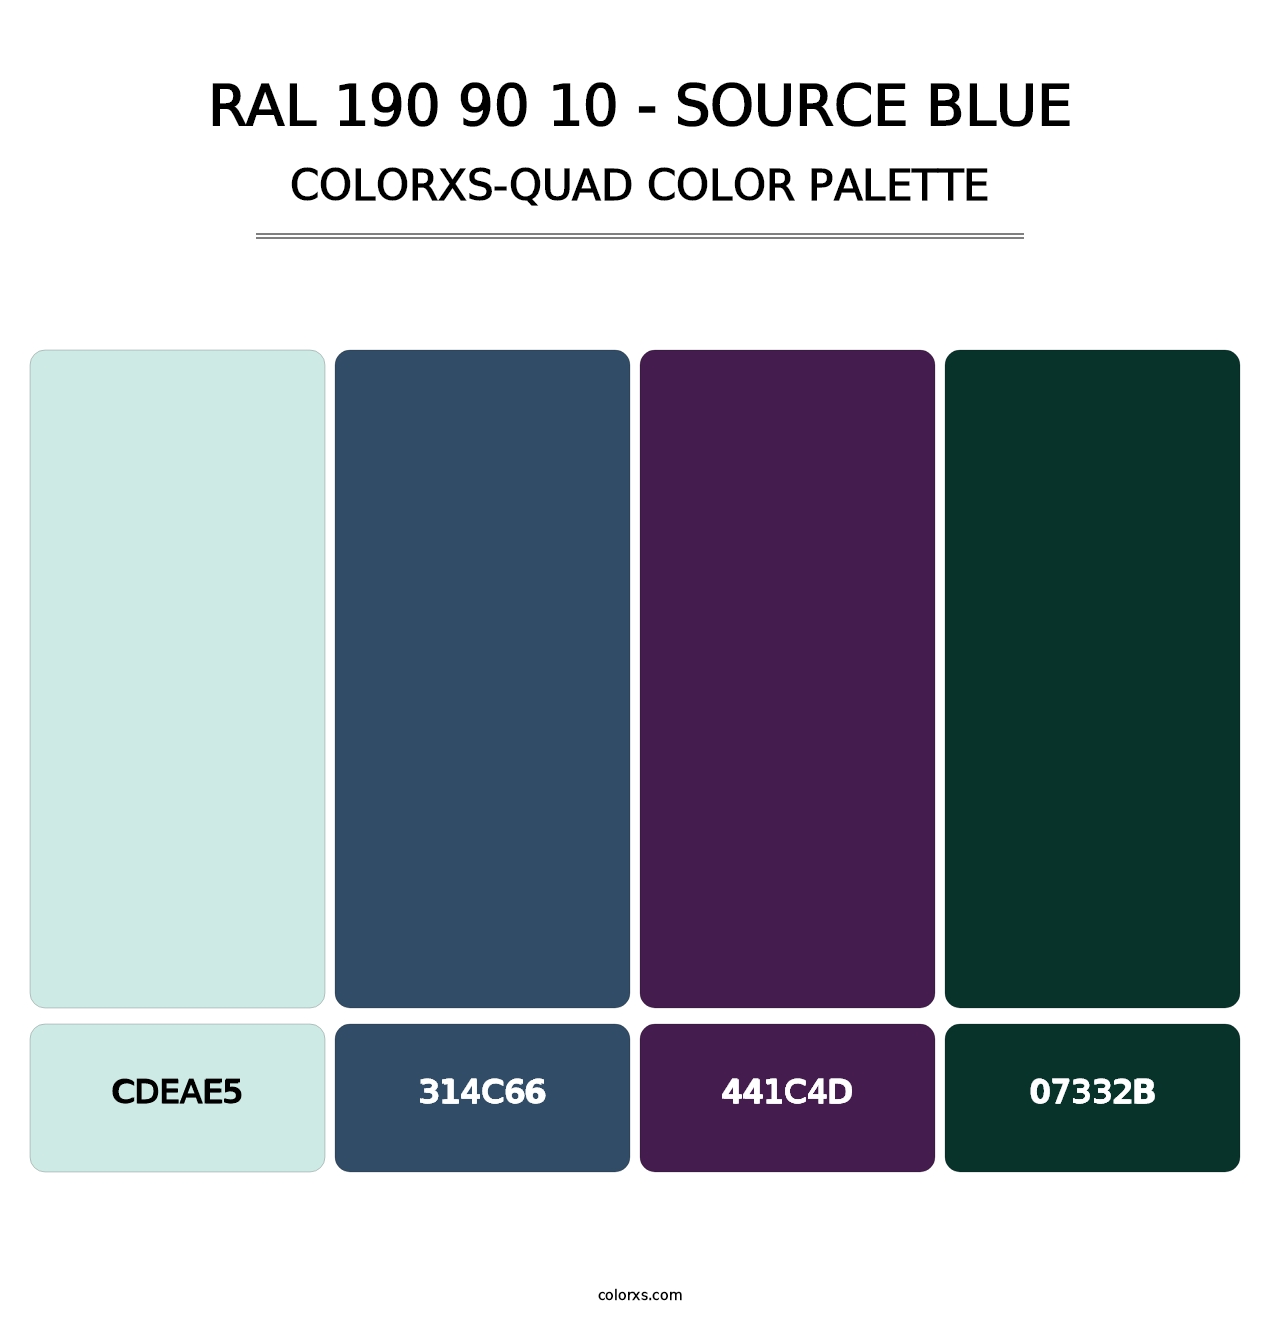 RAL 190 90 10 - Source Blue - Colorxs Quad Palette